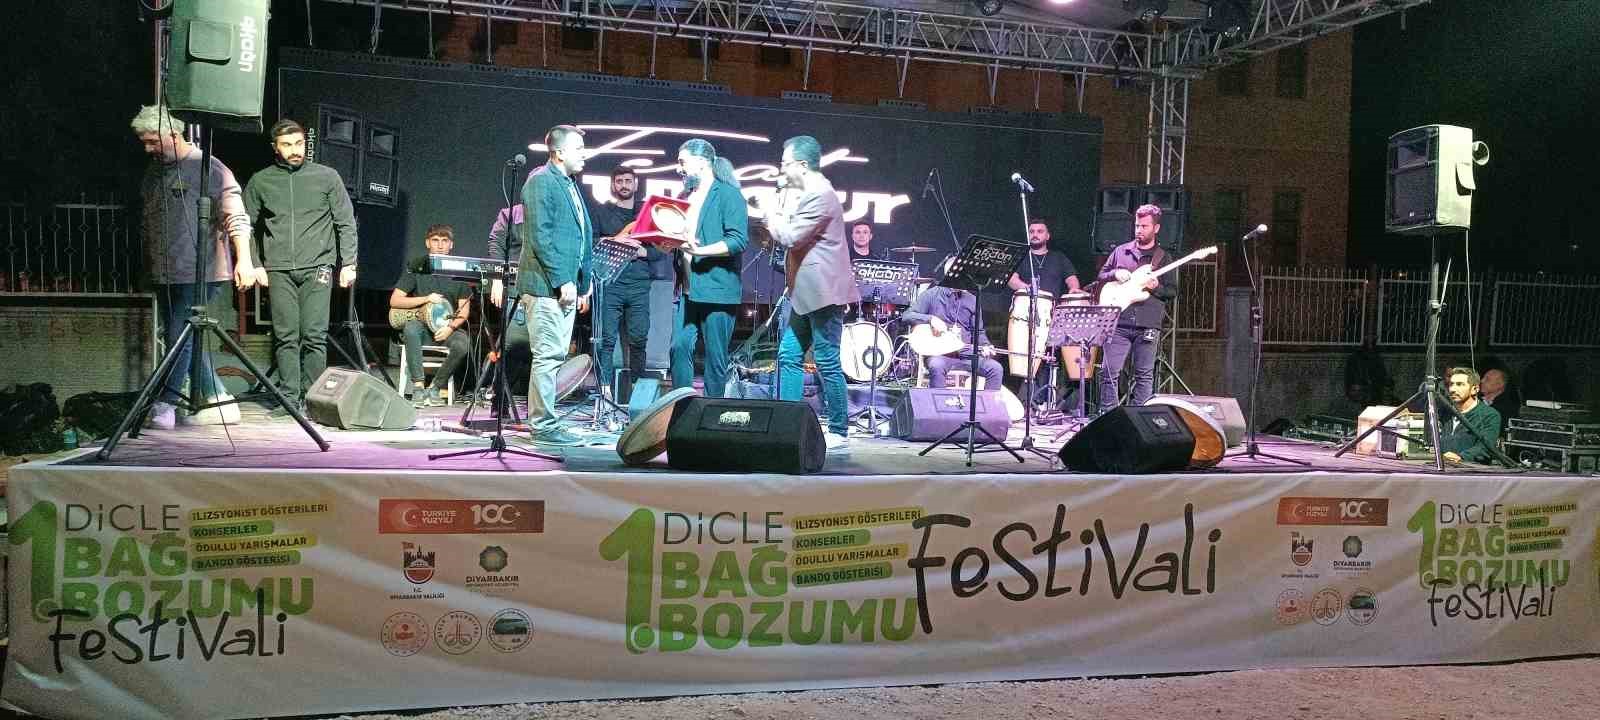 Dicle’de 2 gün süren bağ bozumu festivali konserlerle tamamlandı
